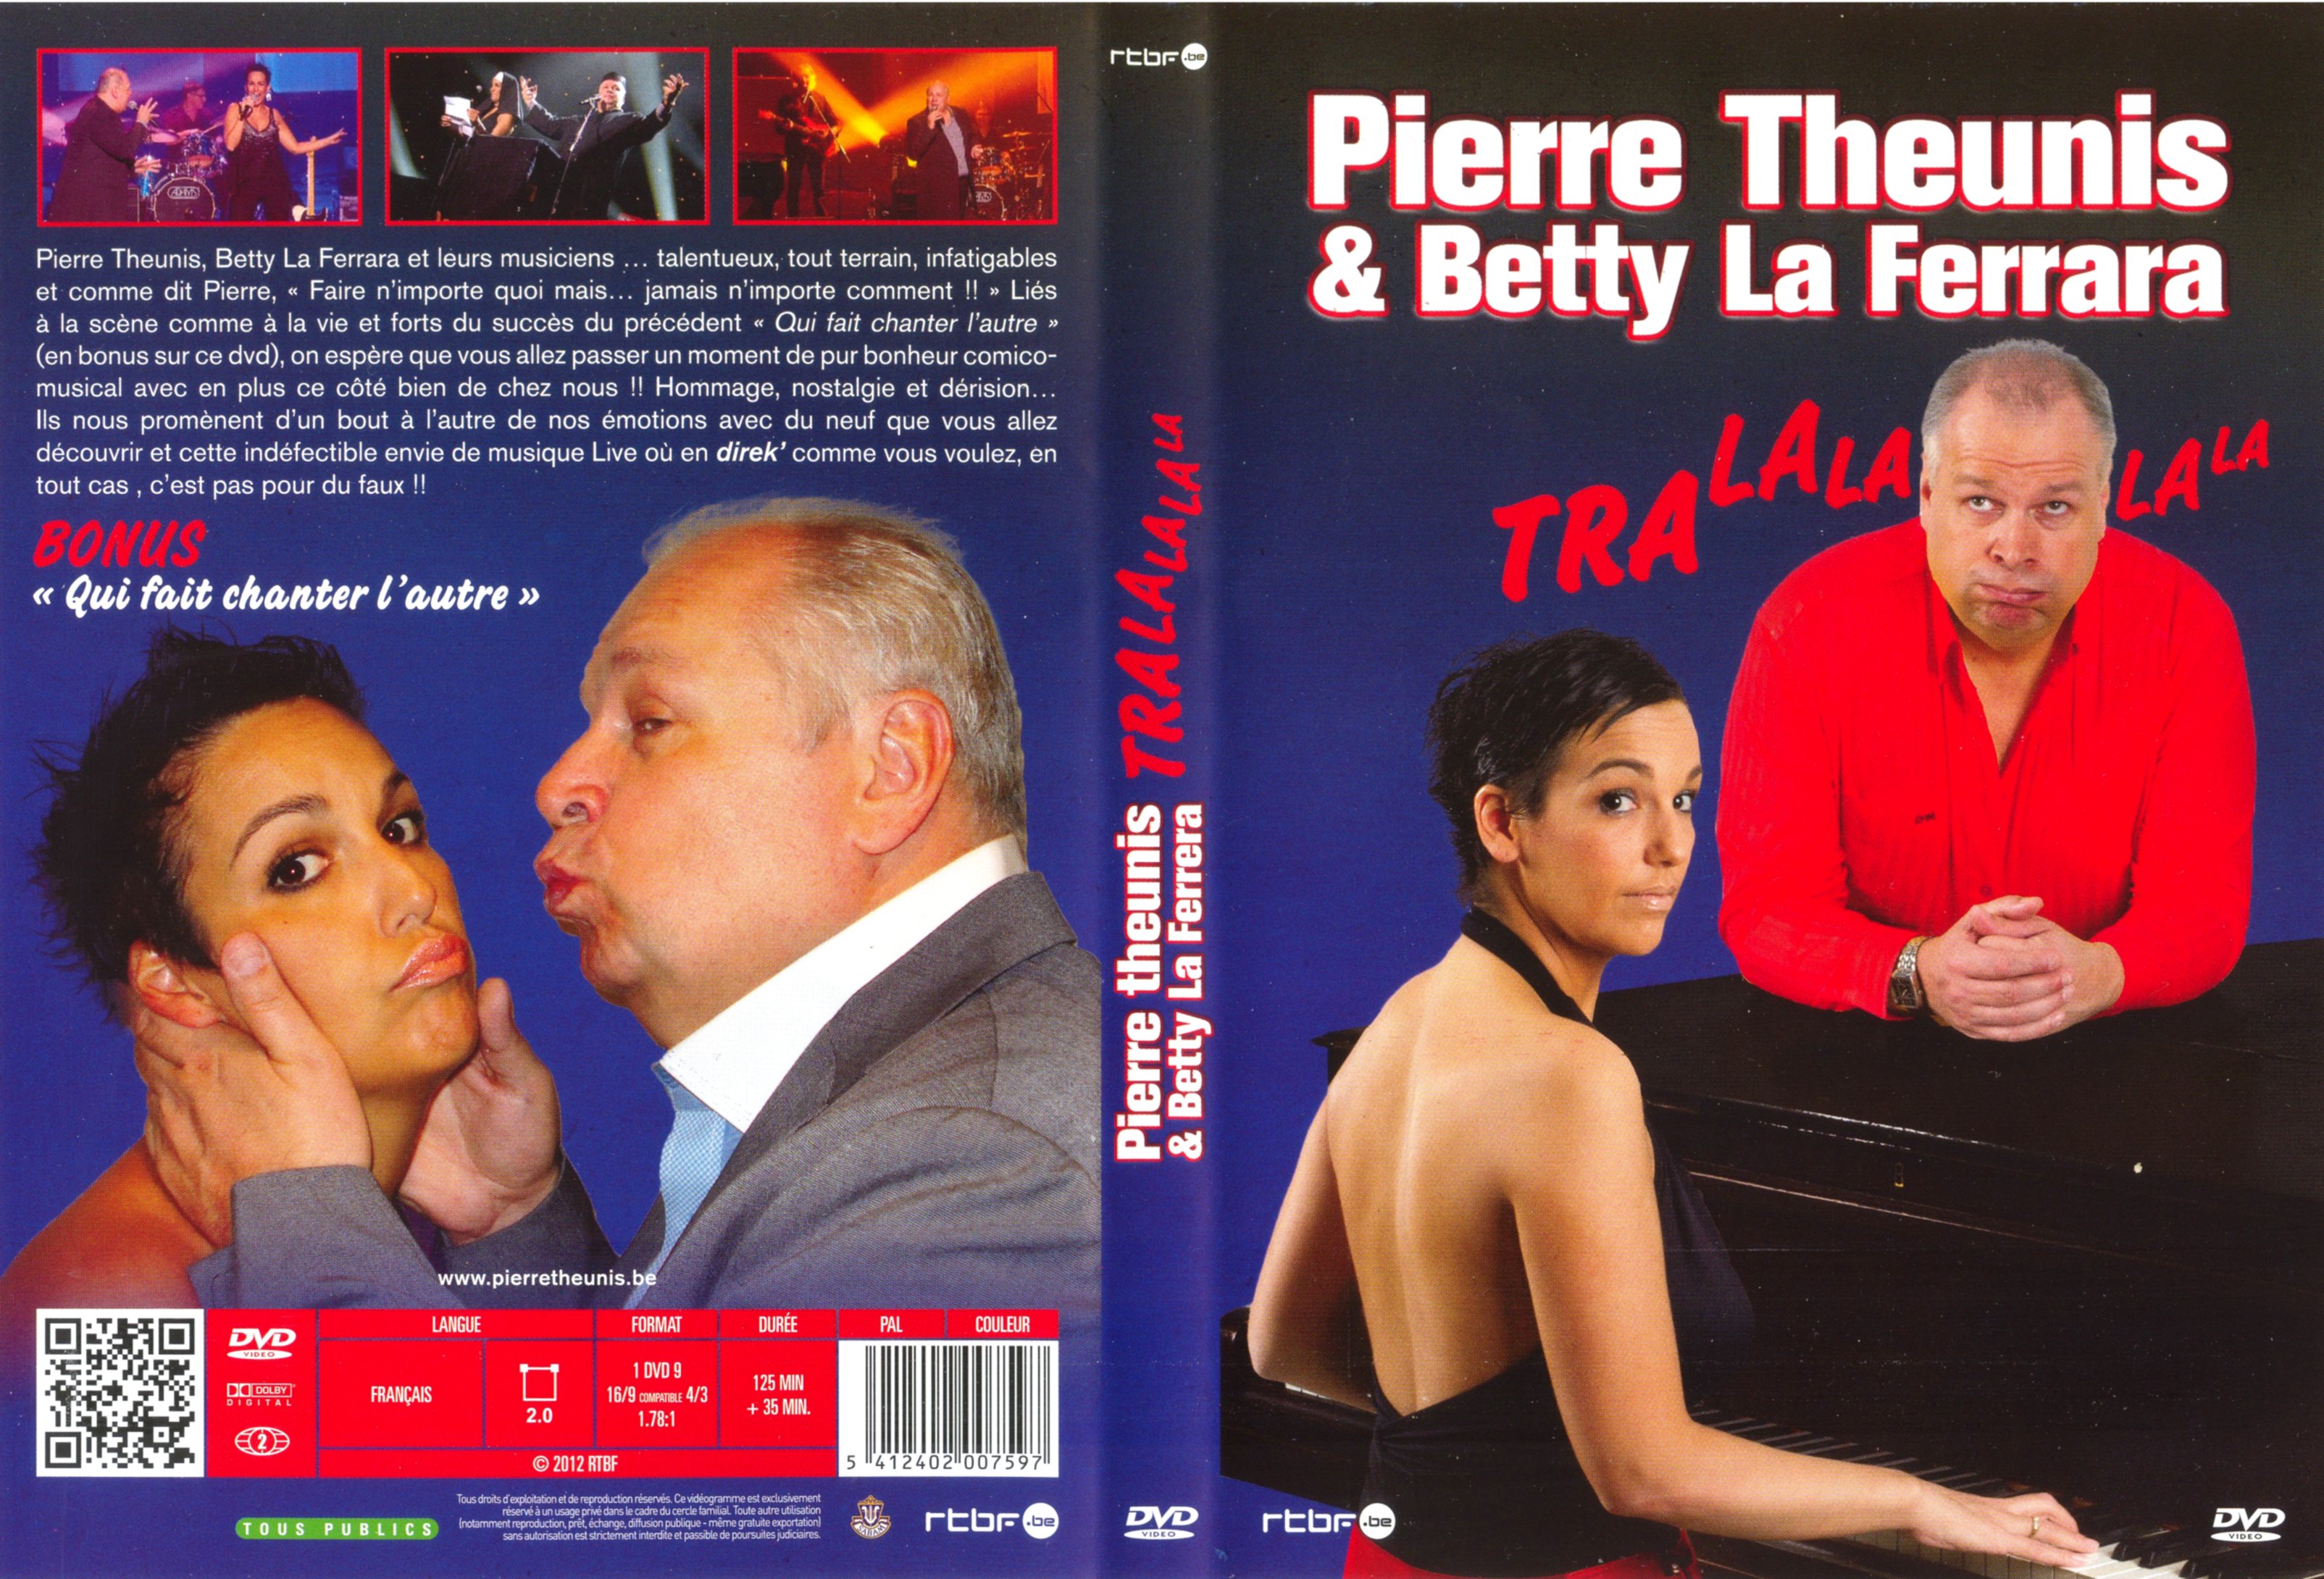 Jaquette DVD Pierre Theunis & betty la ferrara